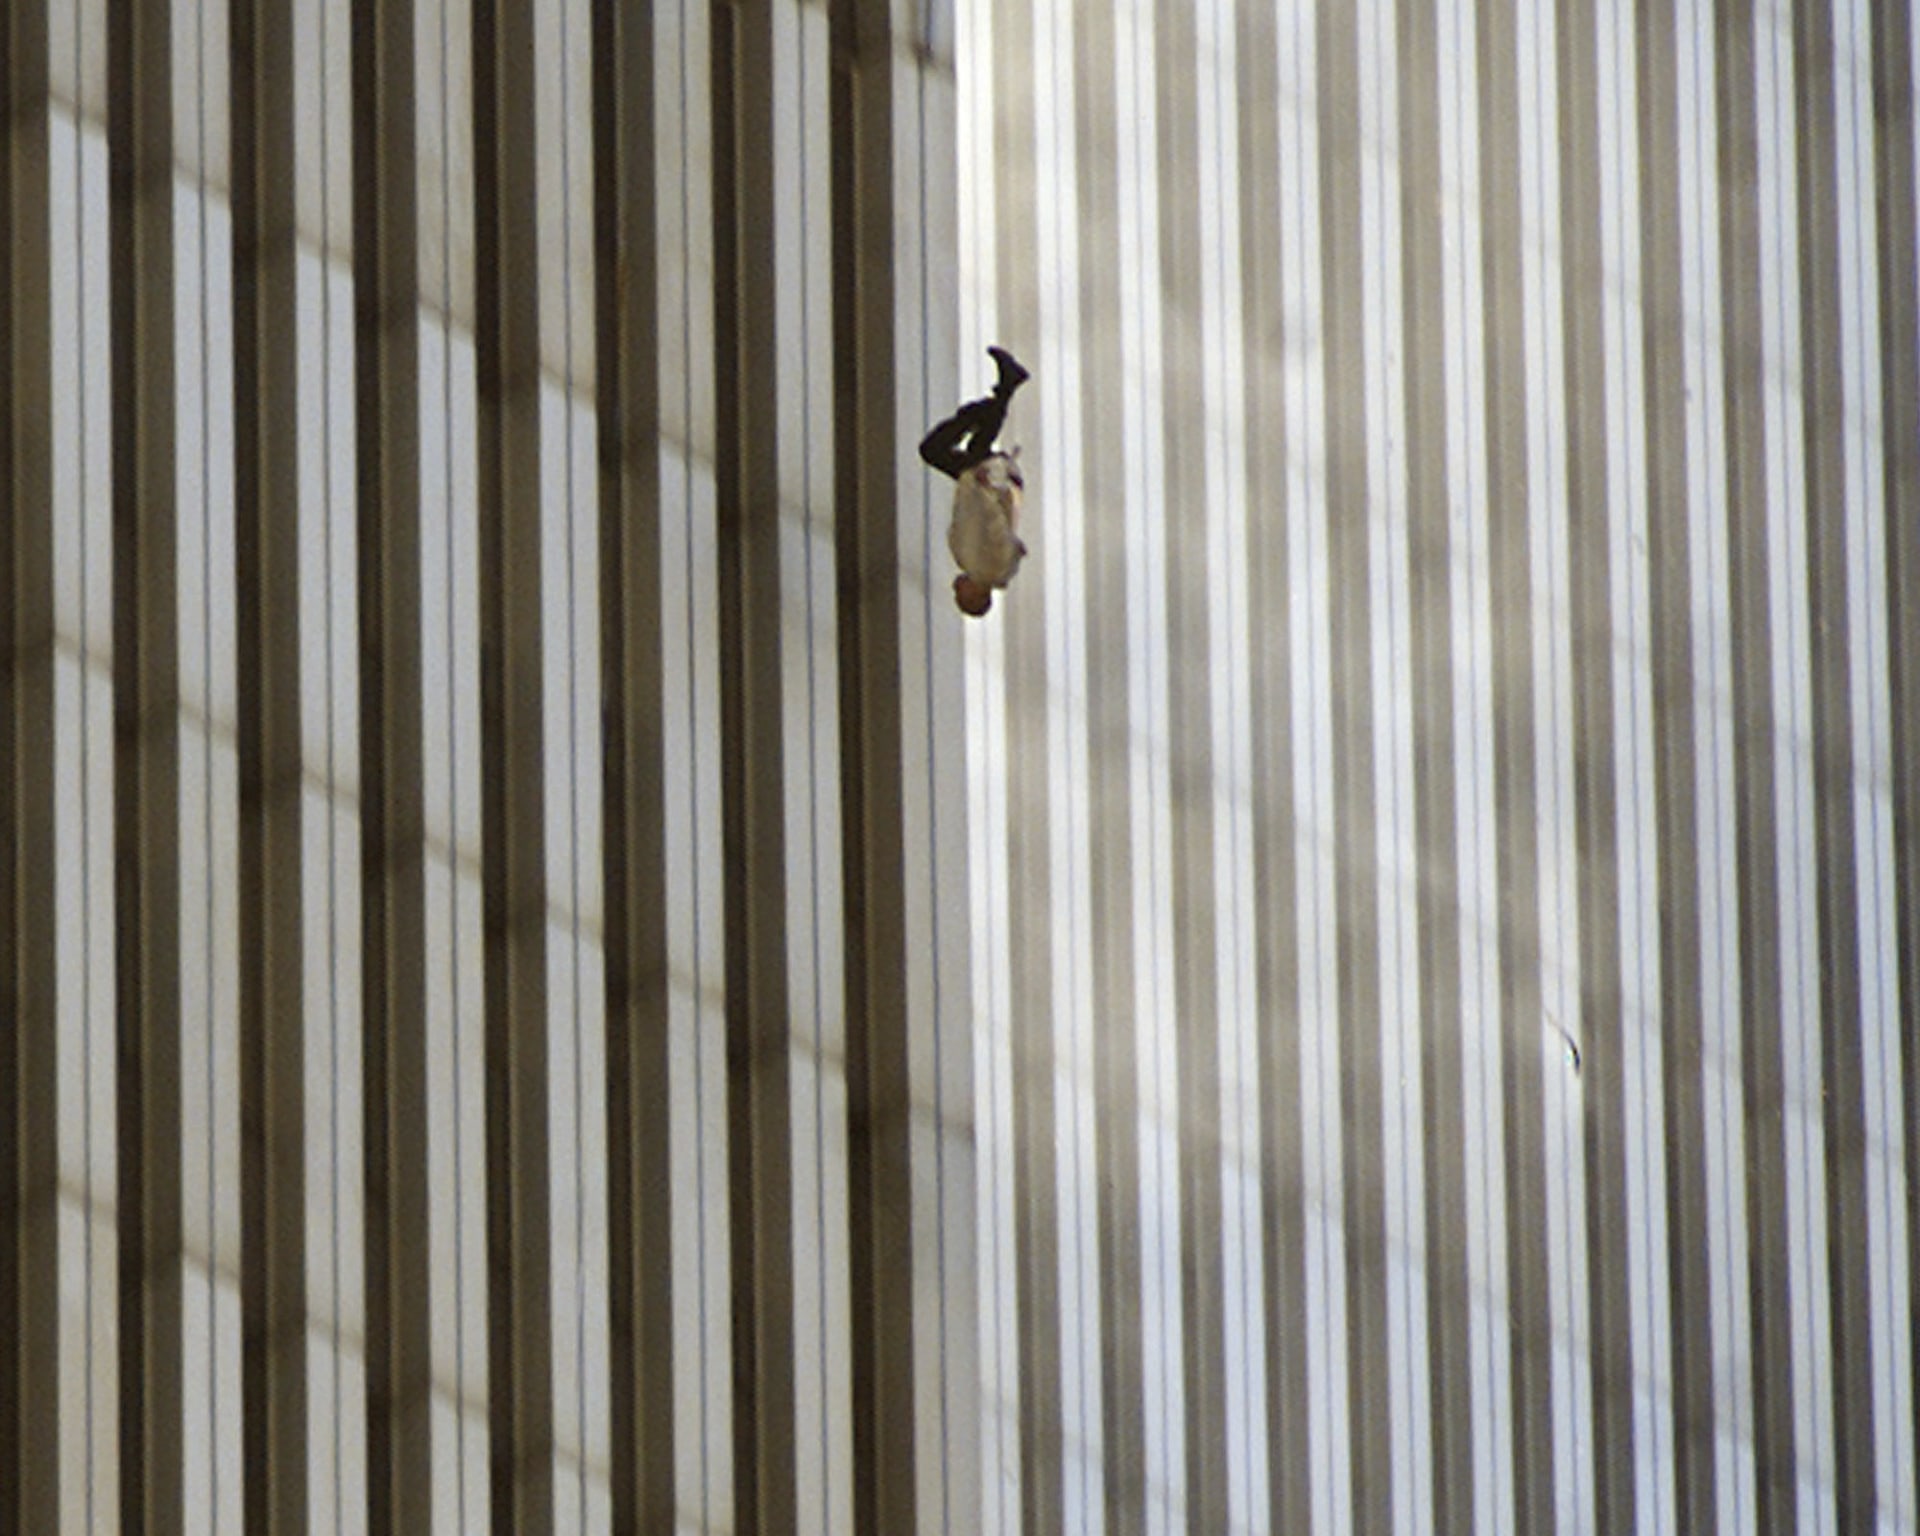 Snímek člověka, který v zoufalém pokusu uniknout plamenům požáru vyskočil z okna horních pater mrakodrapu.